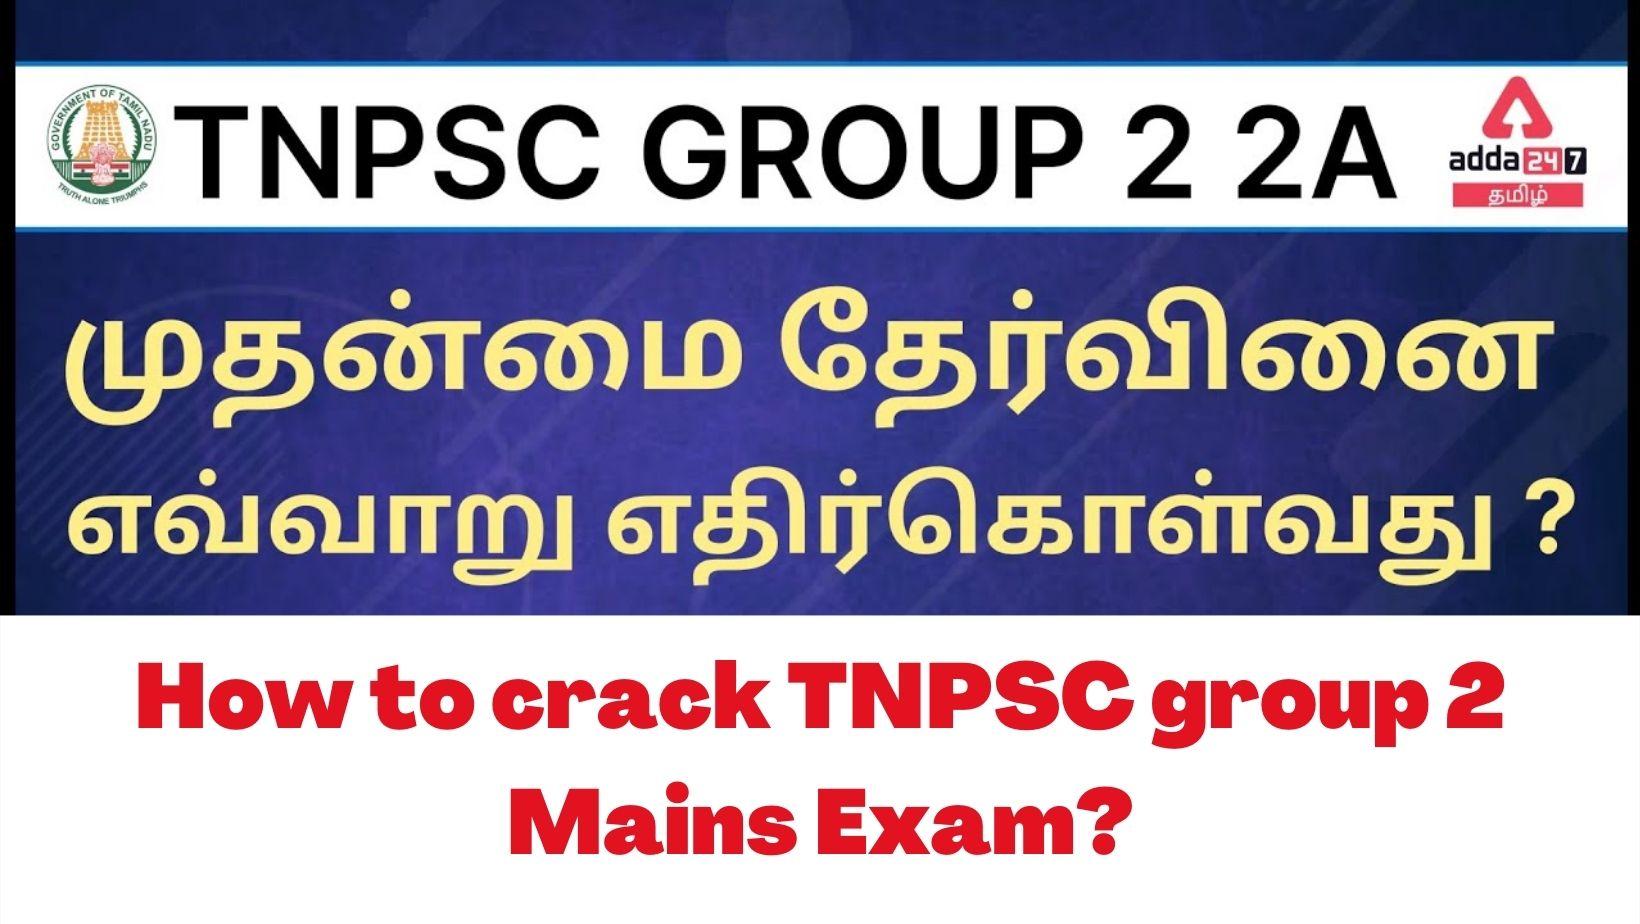 How to crack TNPSC group 2 Mains Exam?